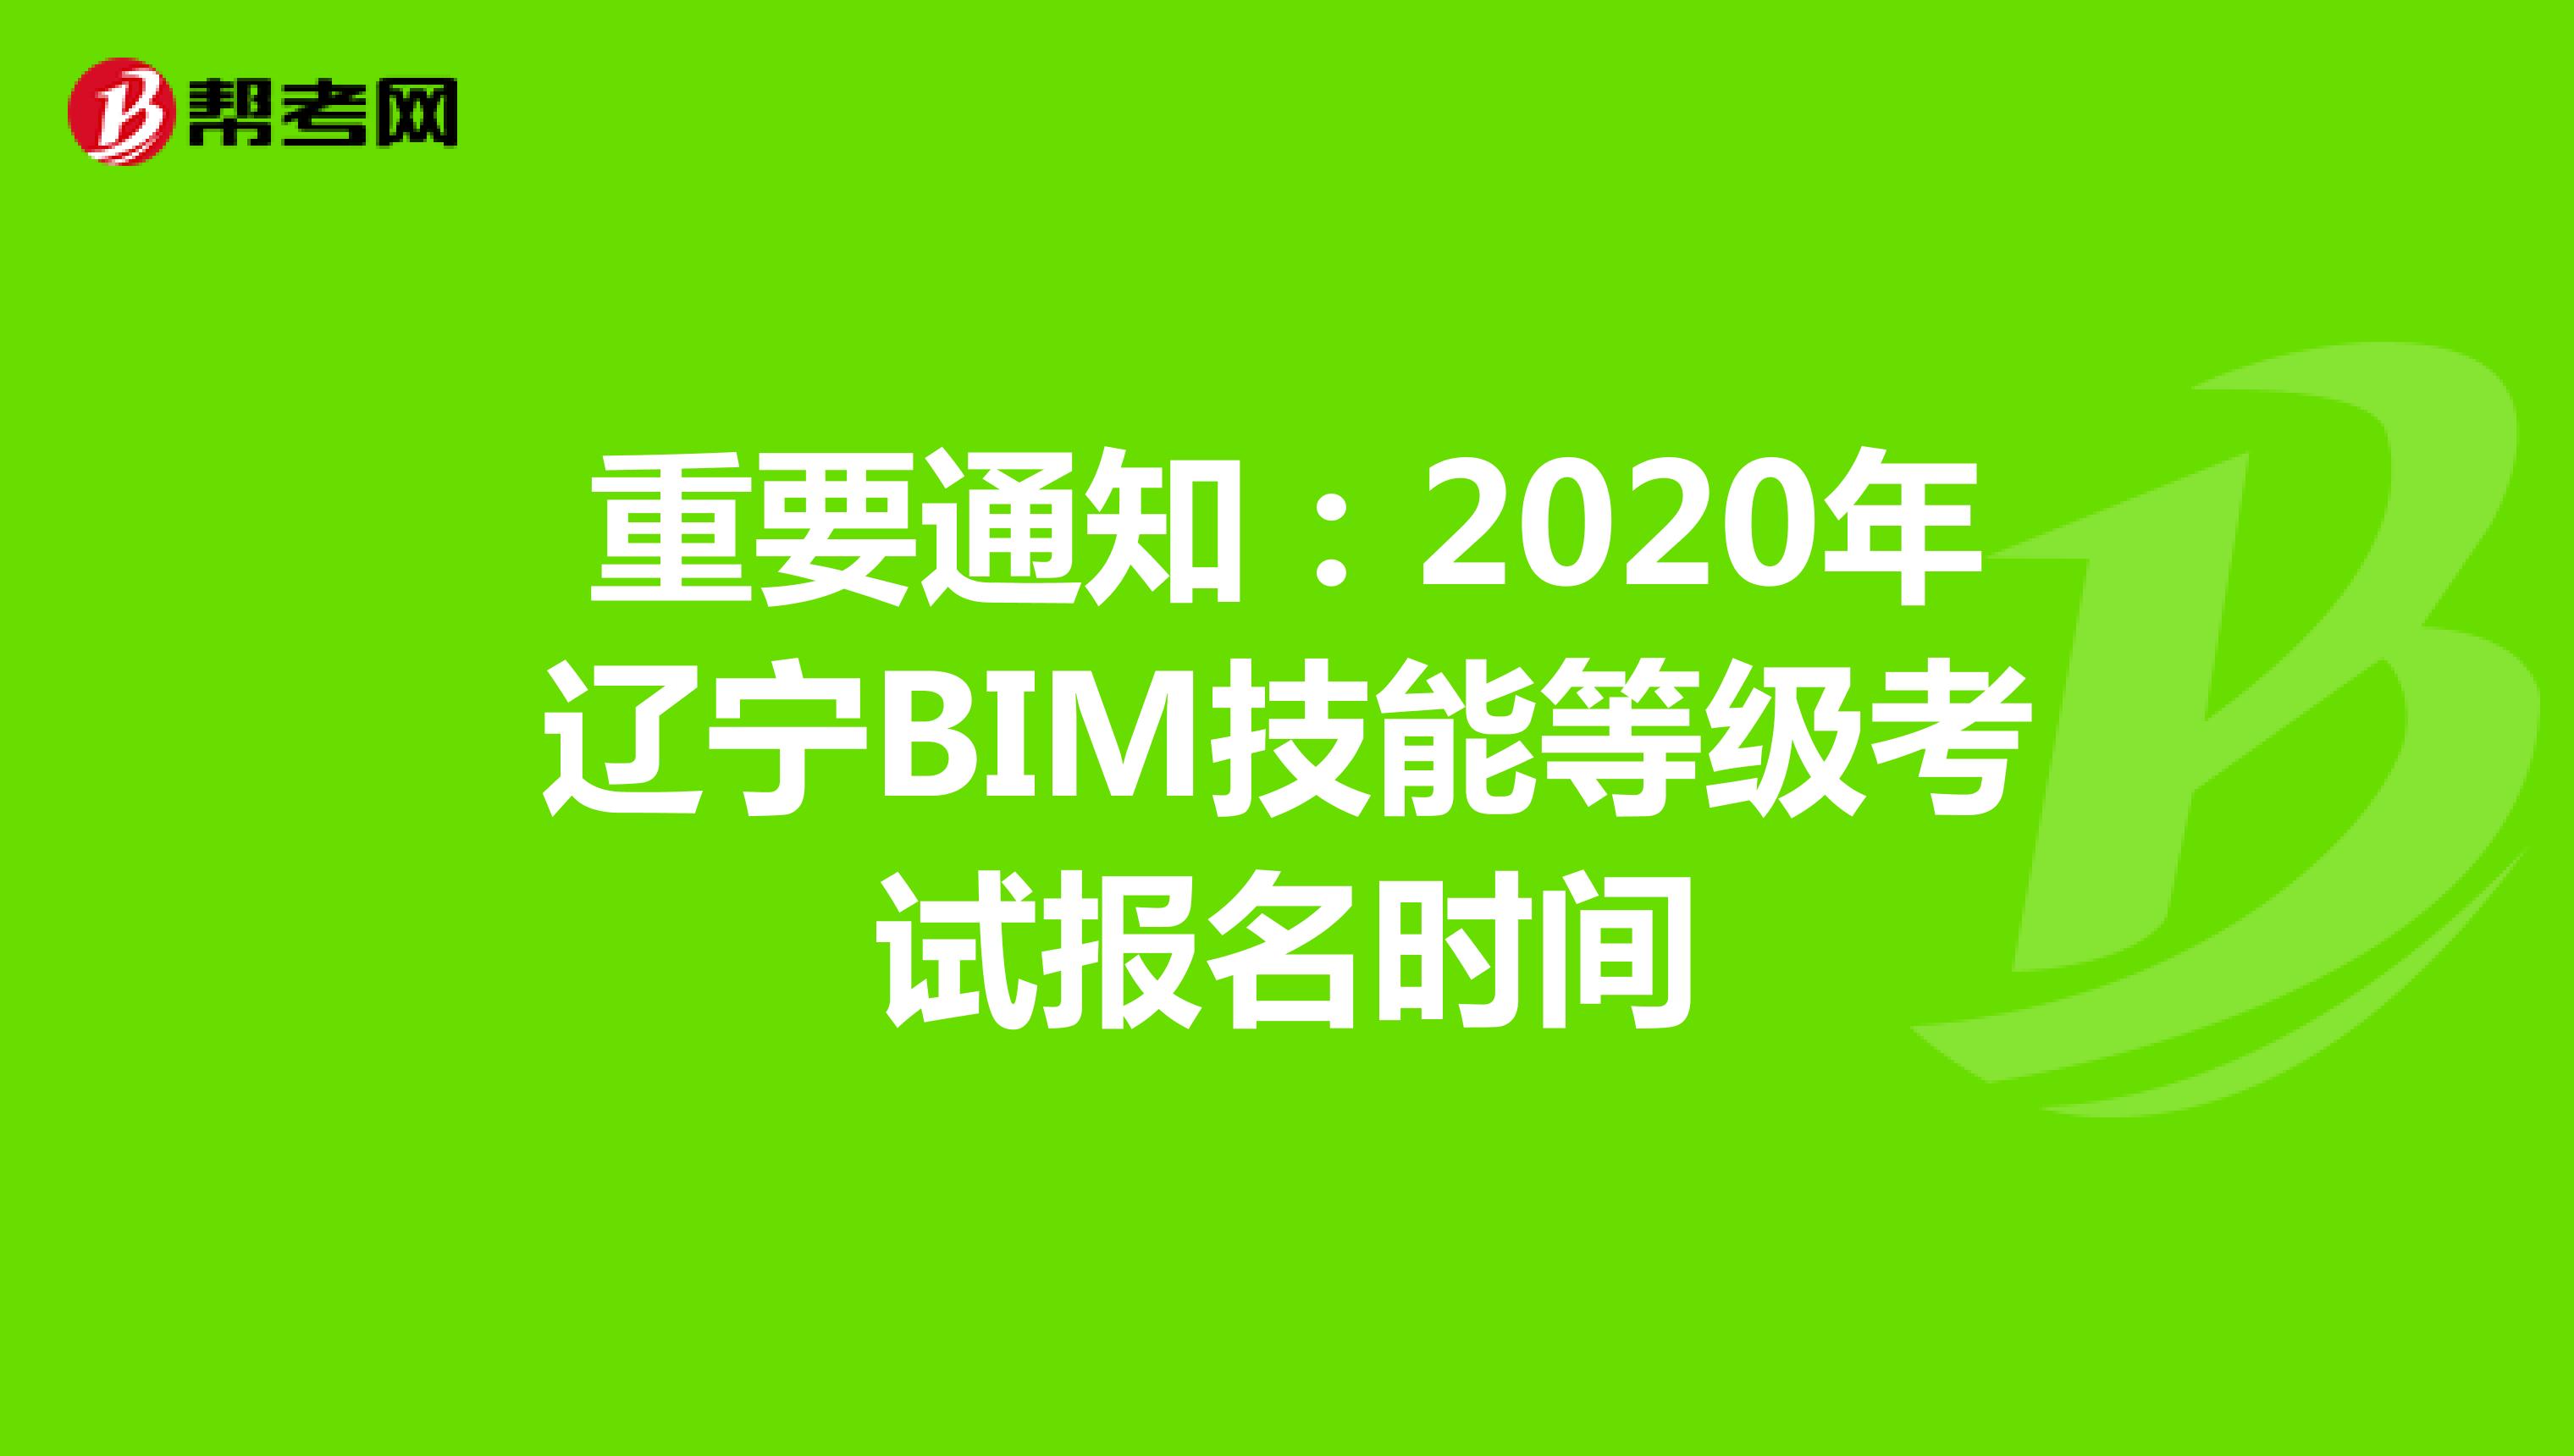 重要通知：2020年辽宁BIM技能等级考试报名时间